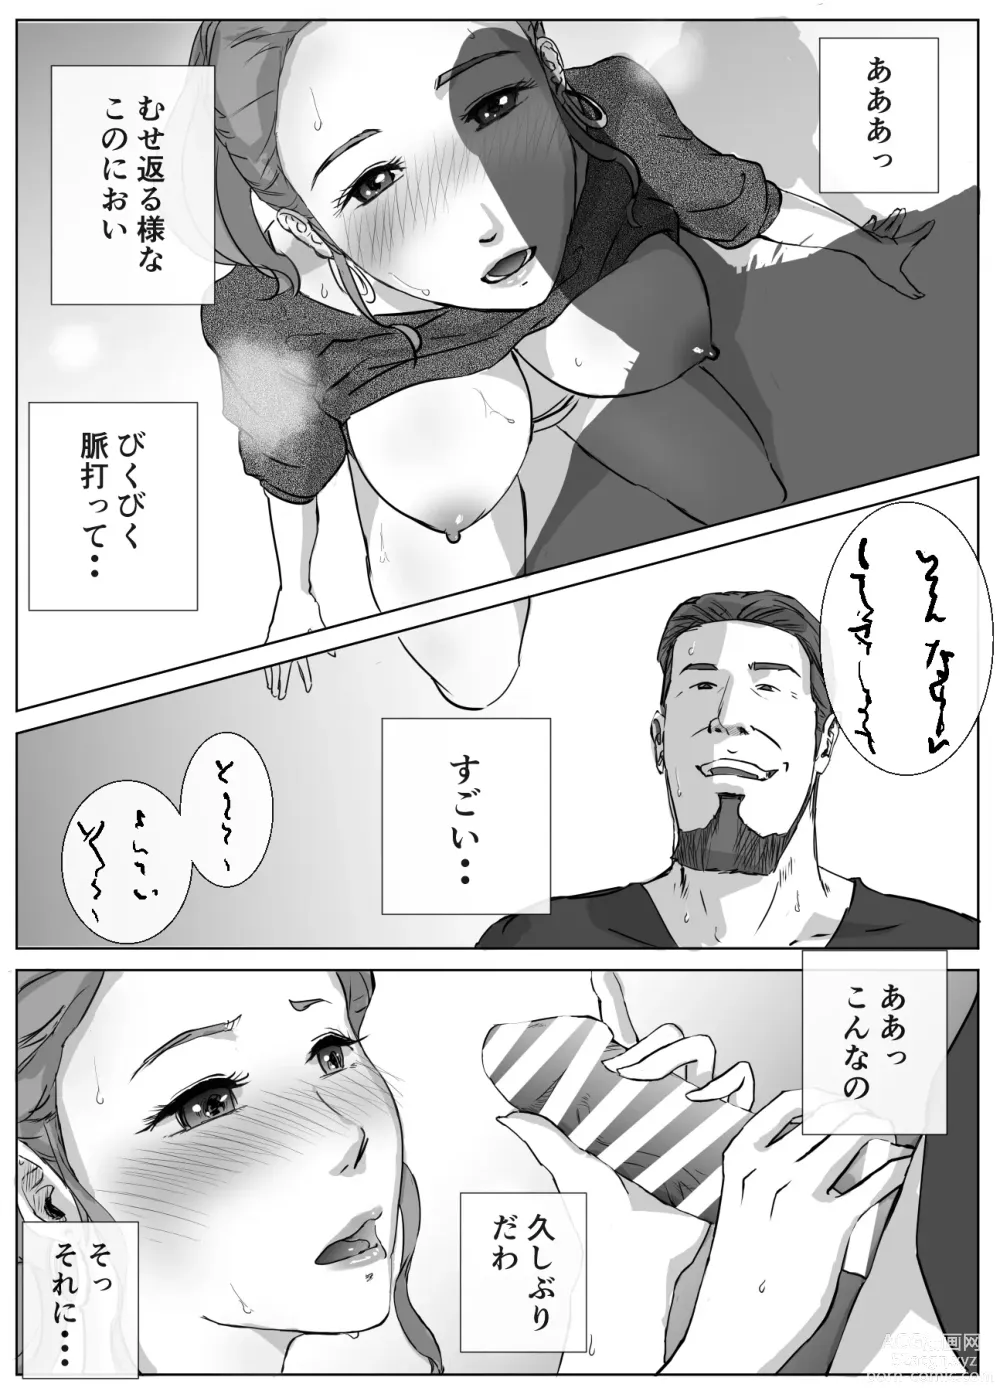 Page 18 of doujinshi Ano Hi no Uso 4 Rina Mama ~Hitomi~ 1-nen Mae no Dekigoto